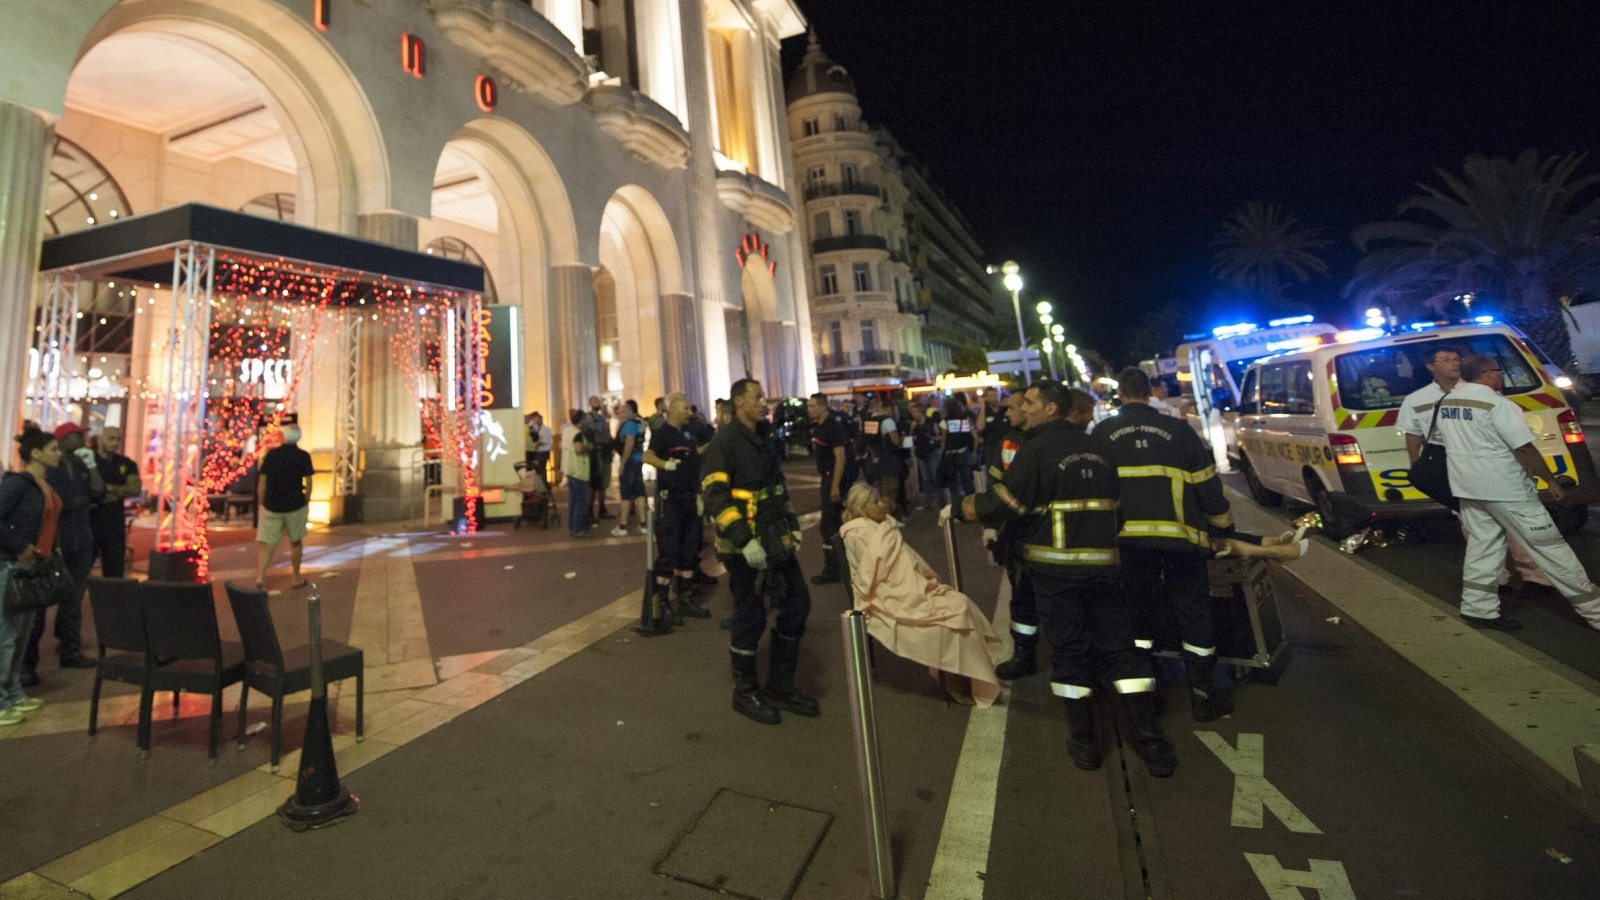 عملية الدعس وقعت بعد هدوء نسبي تبع هجمات باريس (الأوروبية)